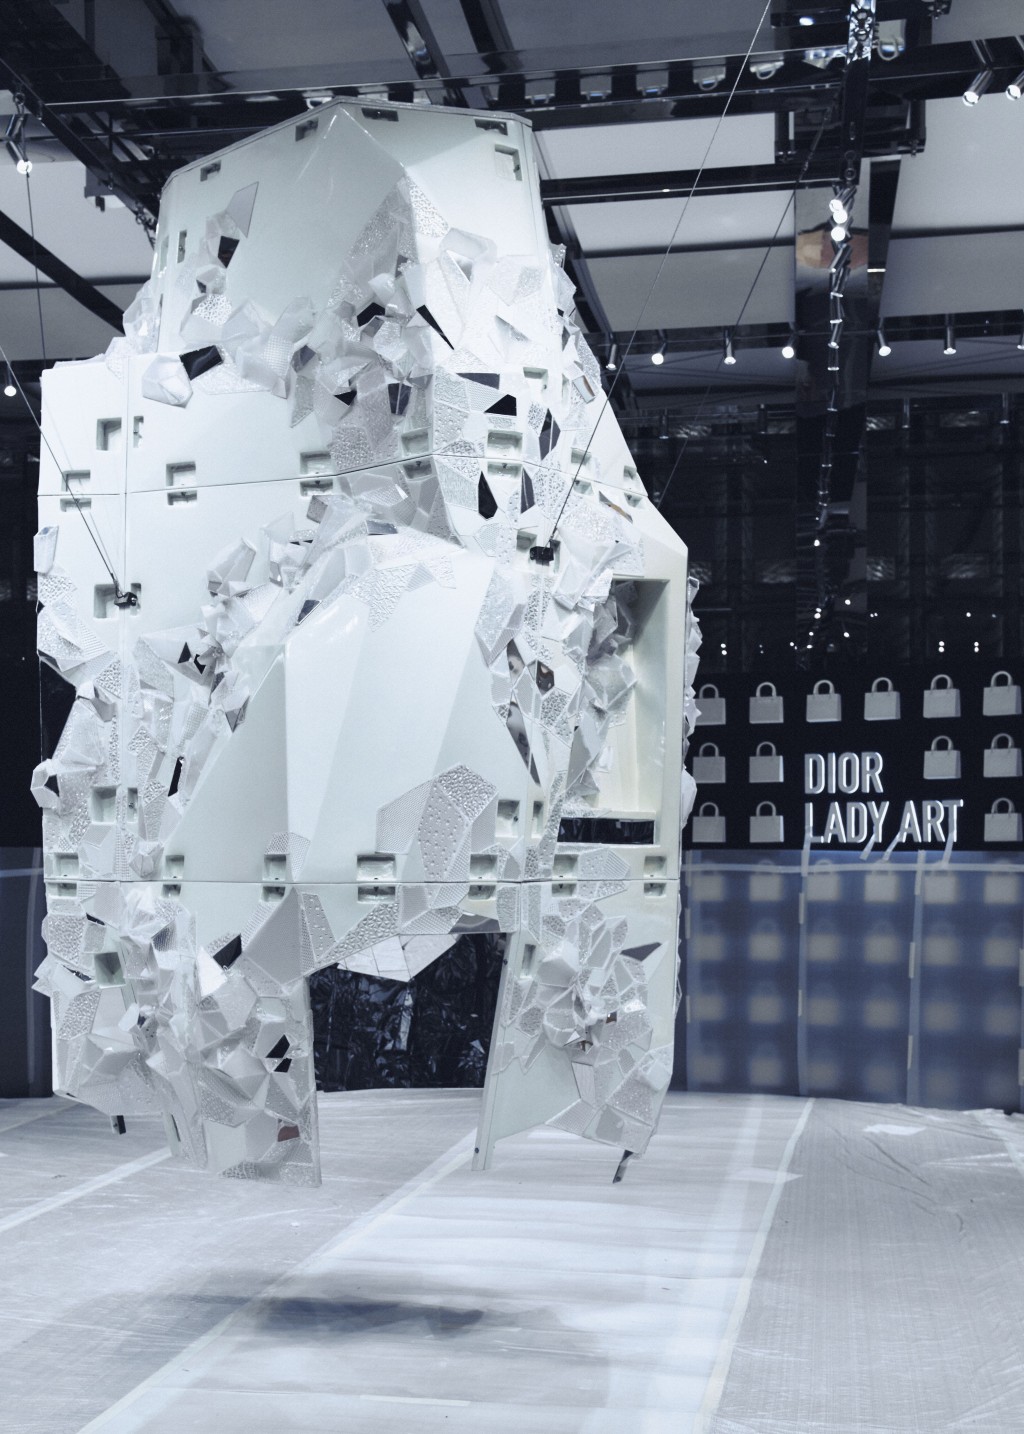 韩国艺术家Lee Bul创作的巨型雕塑Cella，为展览场地制造吸睛焦点。